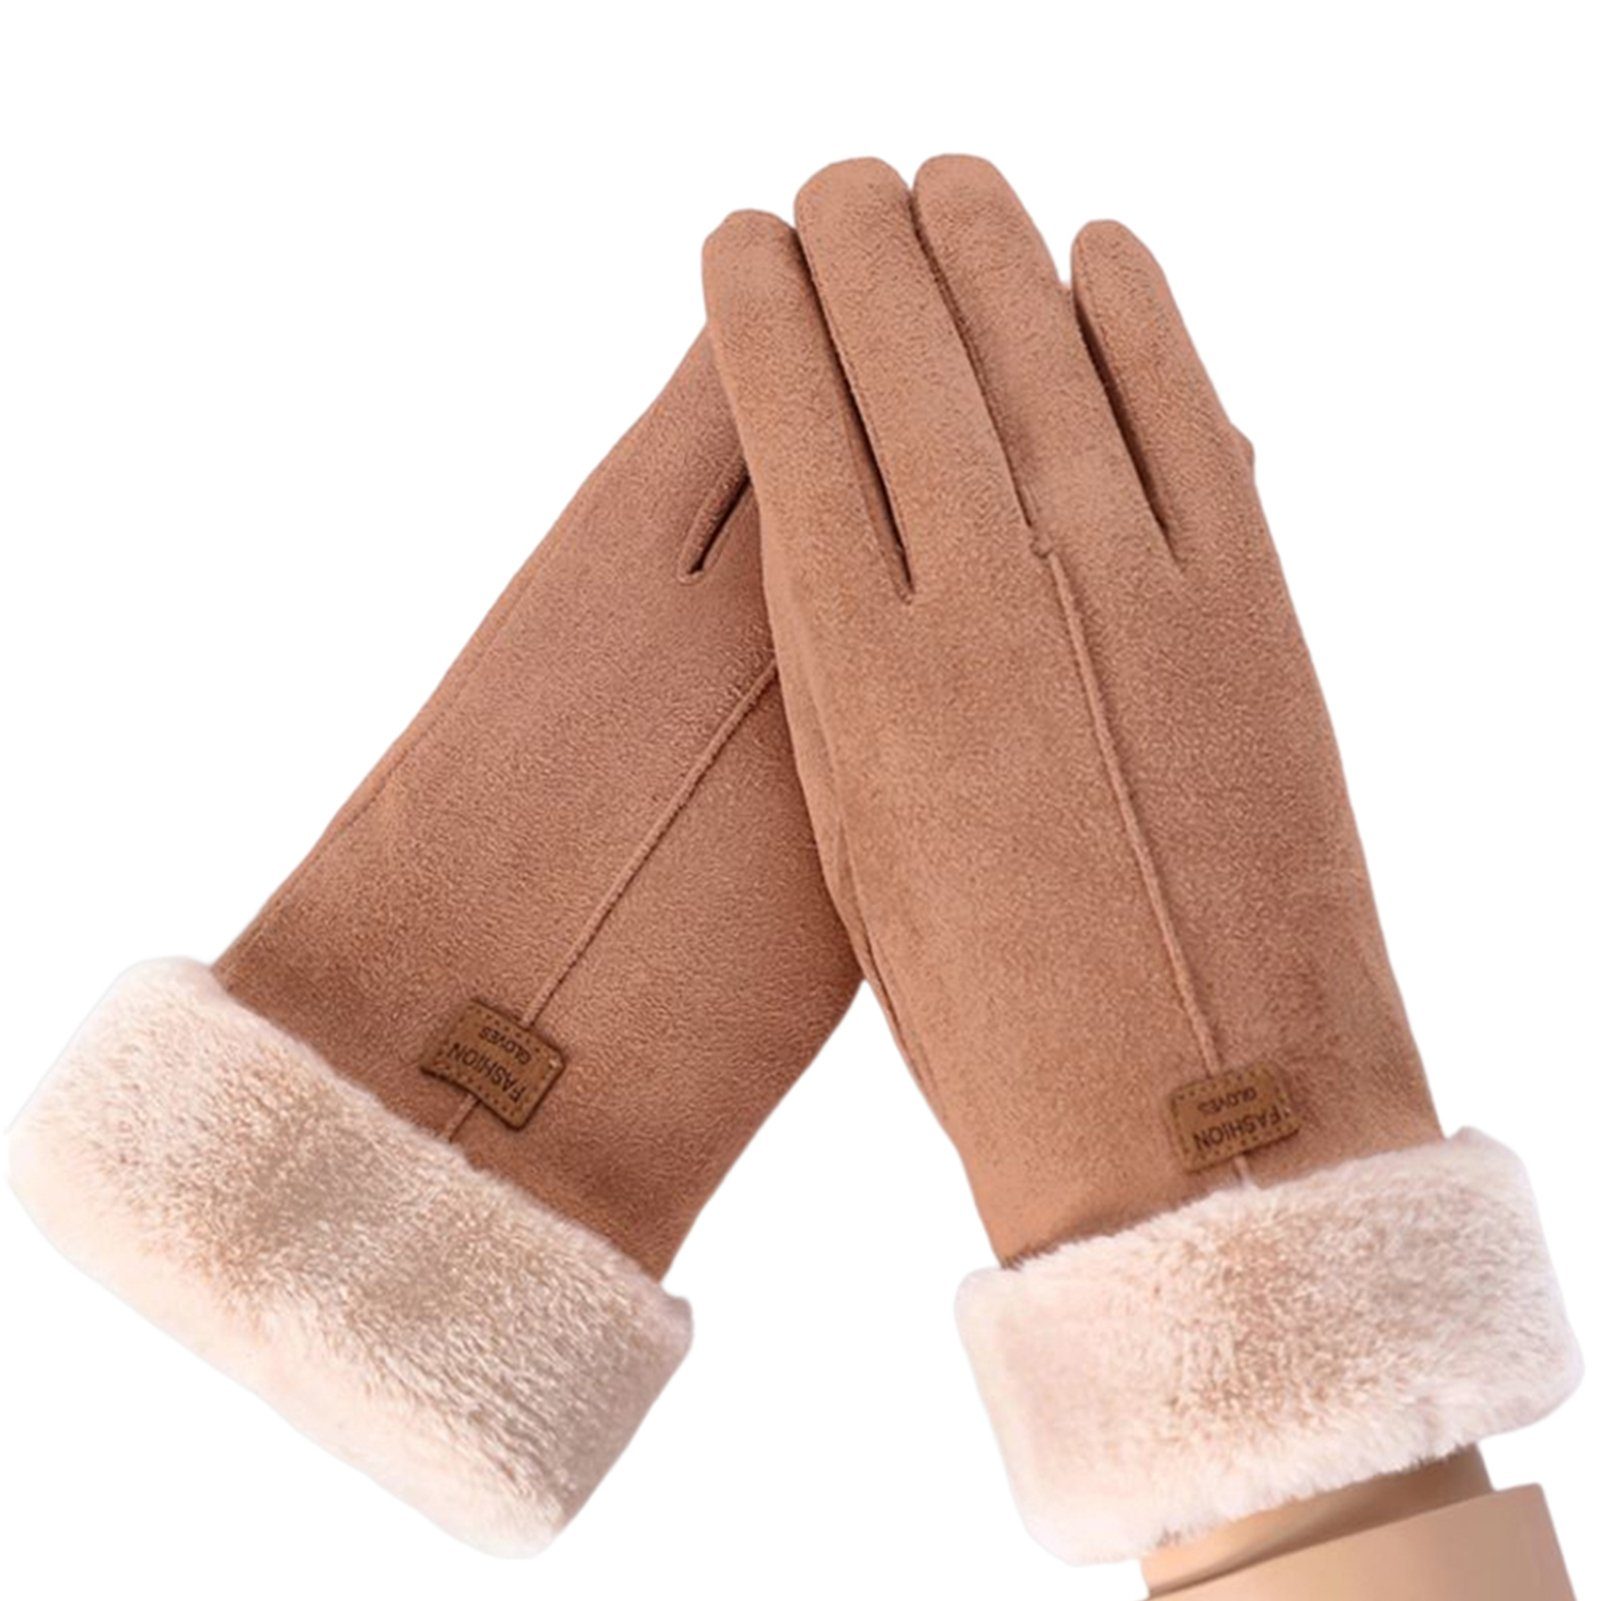 Winter Damen Verdickung Handschuhe Blusmart Fleecehandschuhe Handschuhe camel Touchscreen Warm Reiten